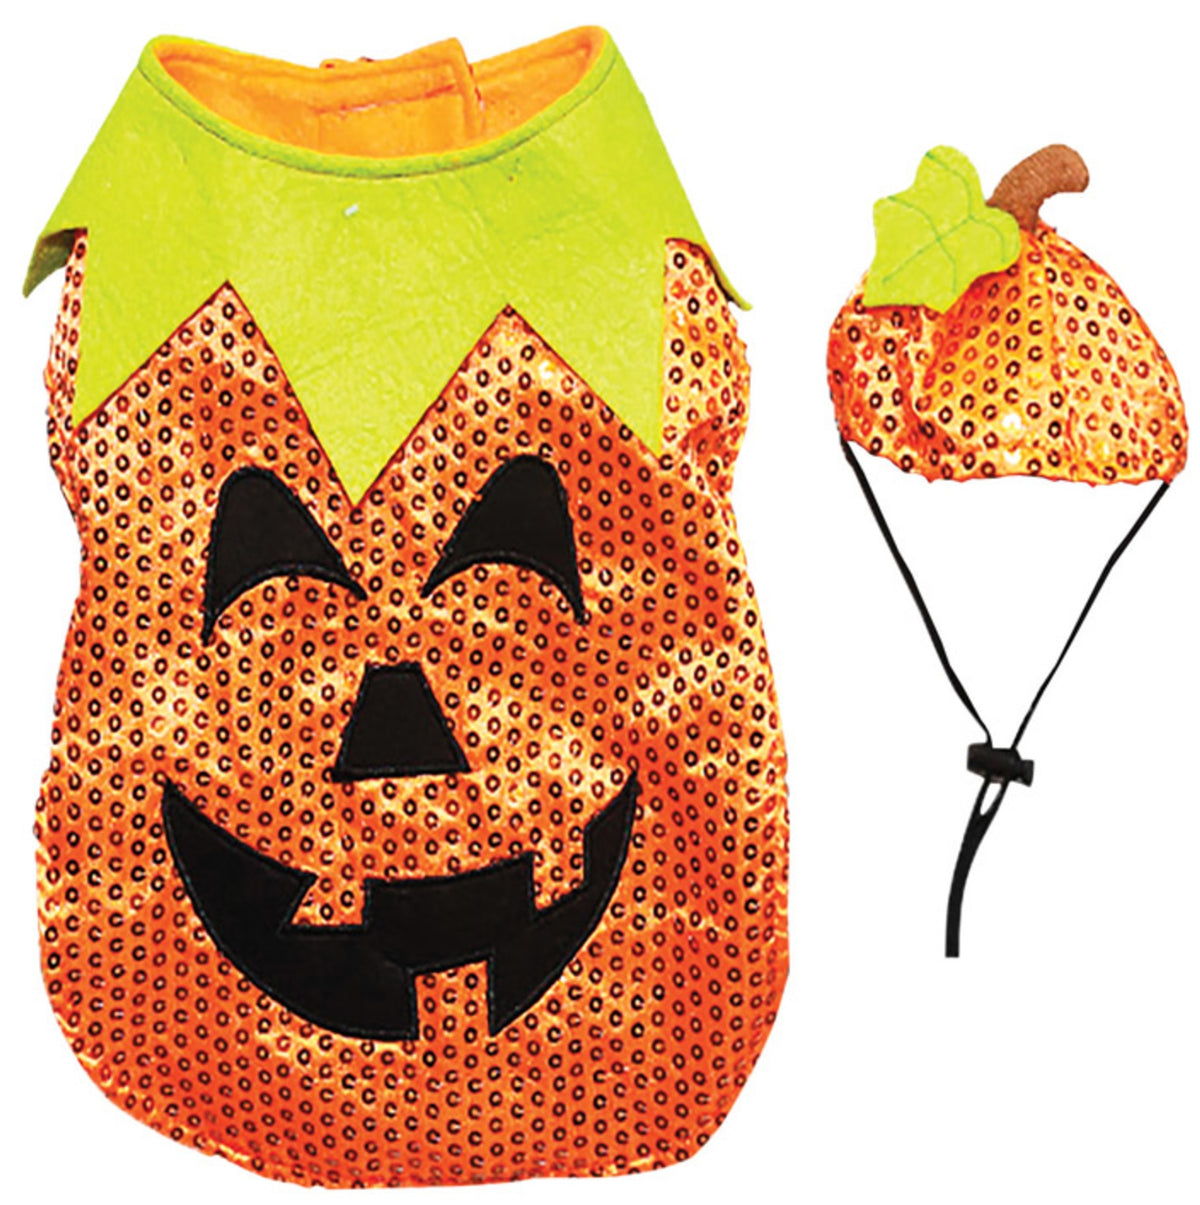 Dyno 3004234-1M Sequin Pumpkin Halloween Pet Costume